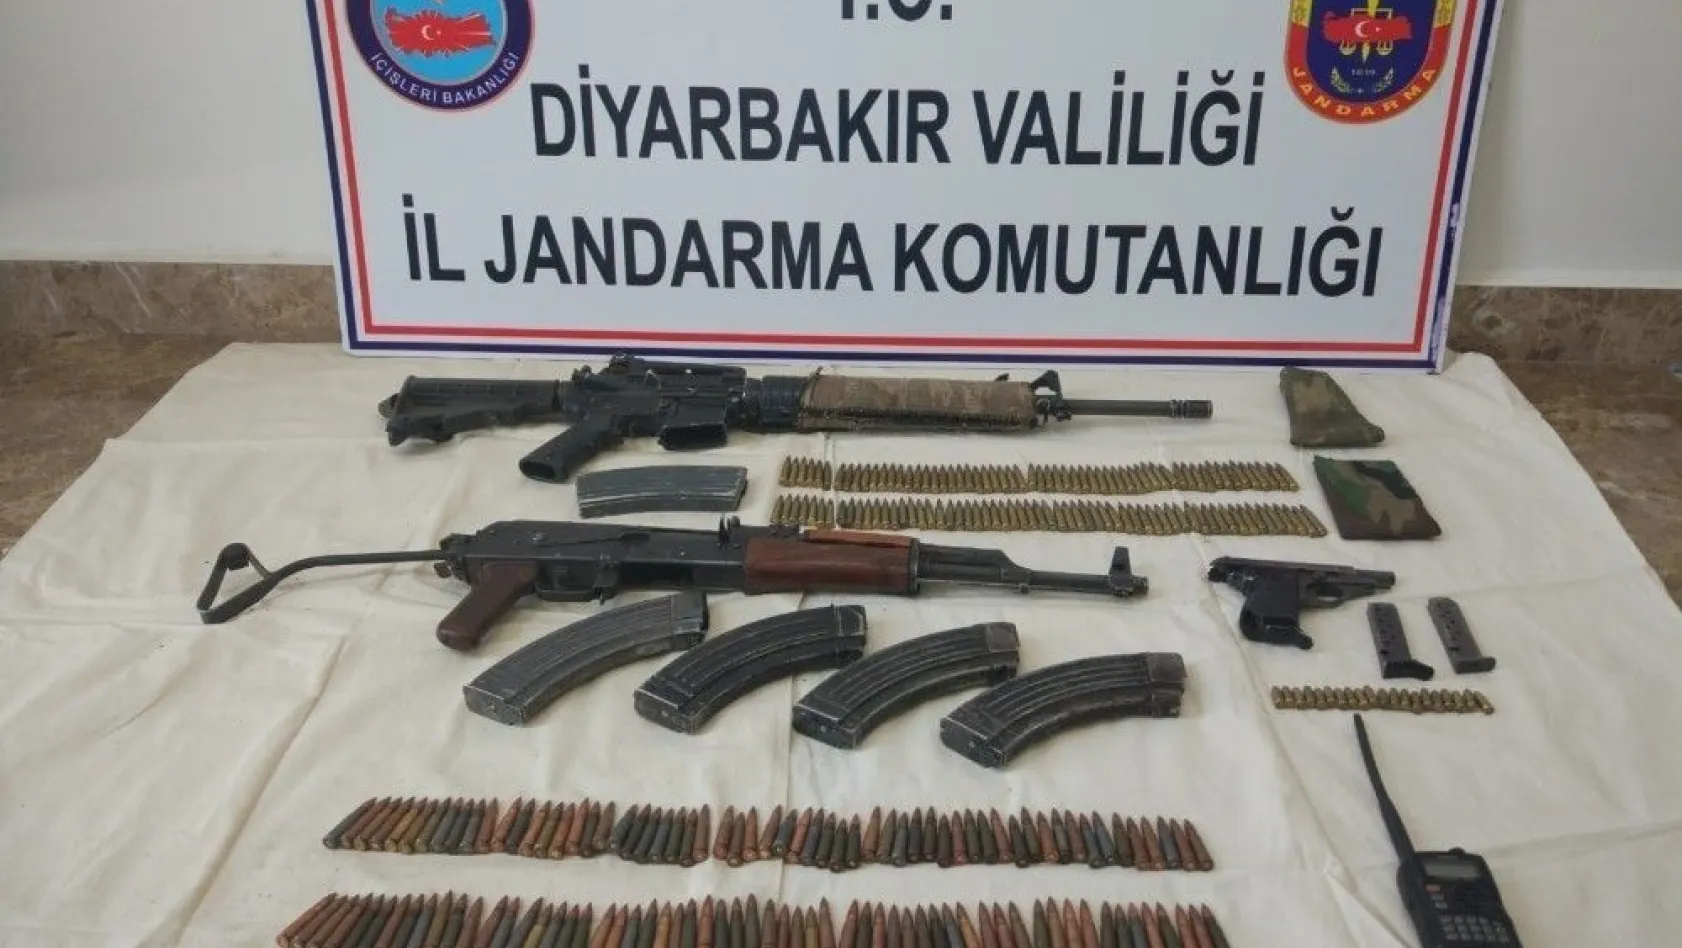 Diyarbakır'da 2 terörist etkisiz hale getirildi
